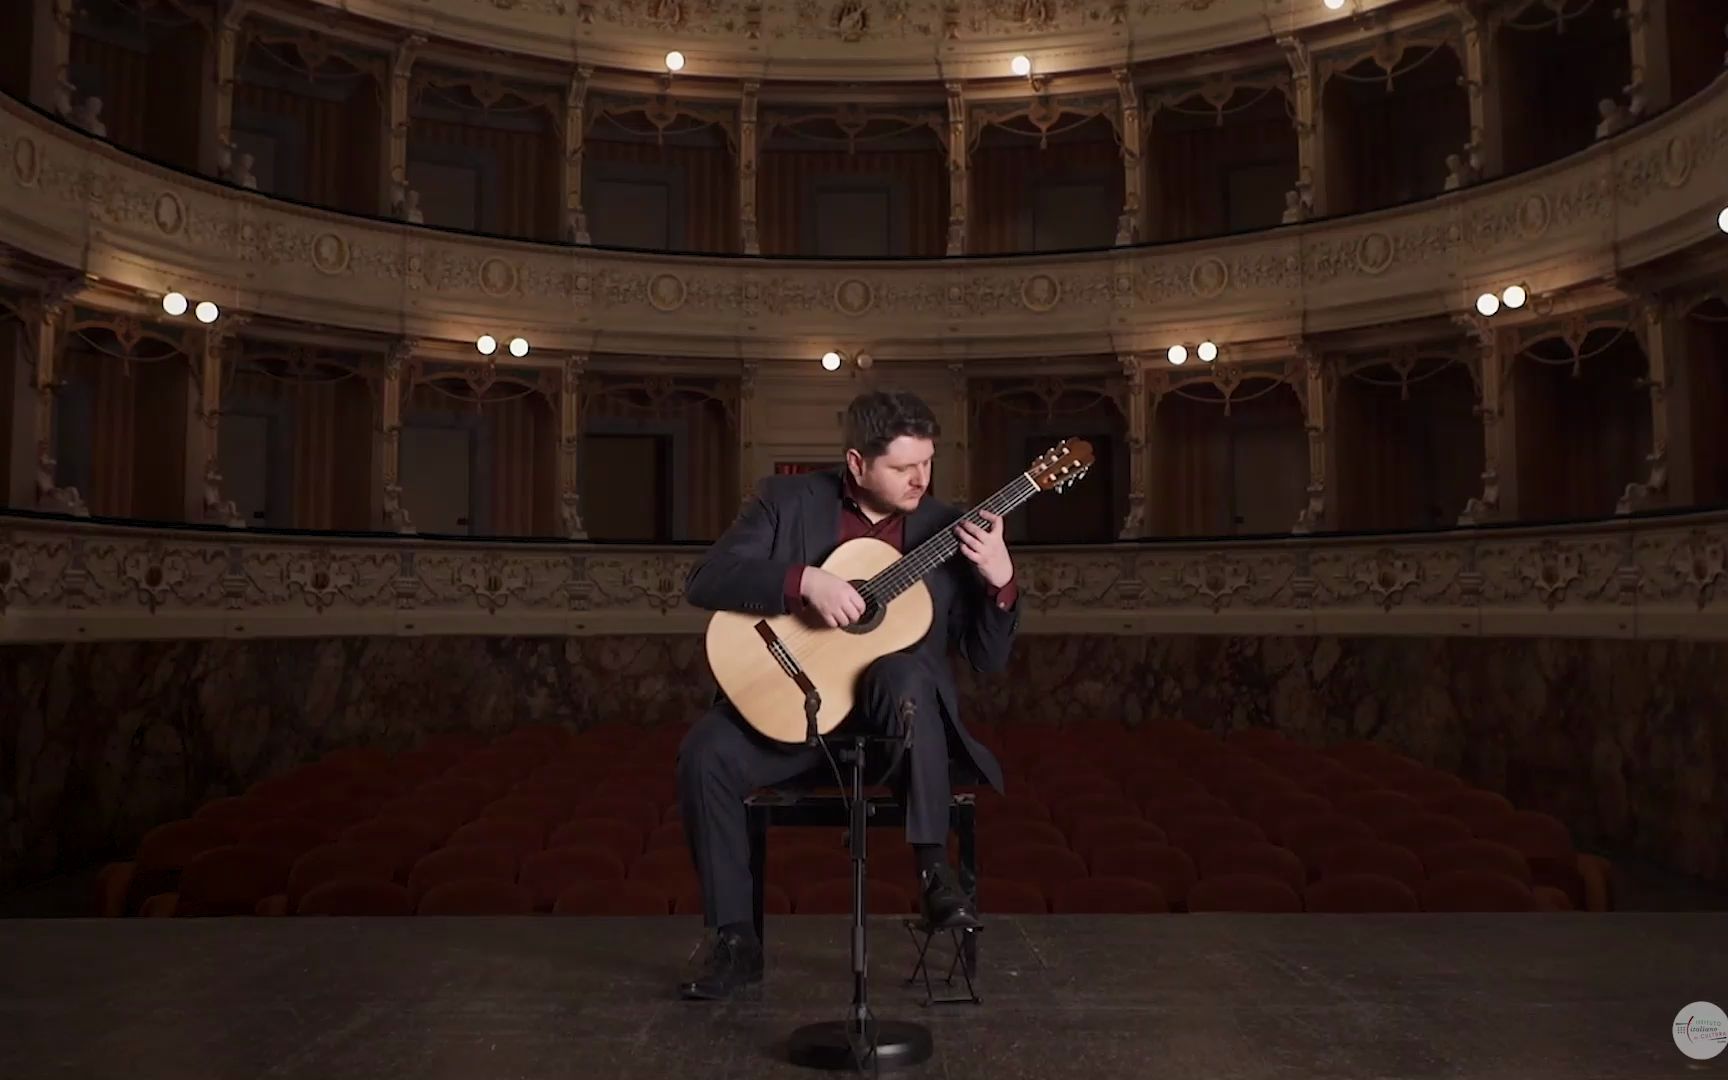 Eugenio Della Chiara 演奏 Paganini, Torroba, Tedesco 等作品